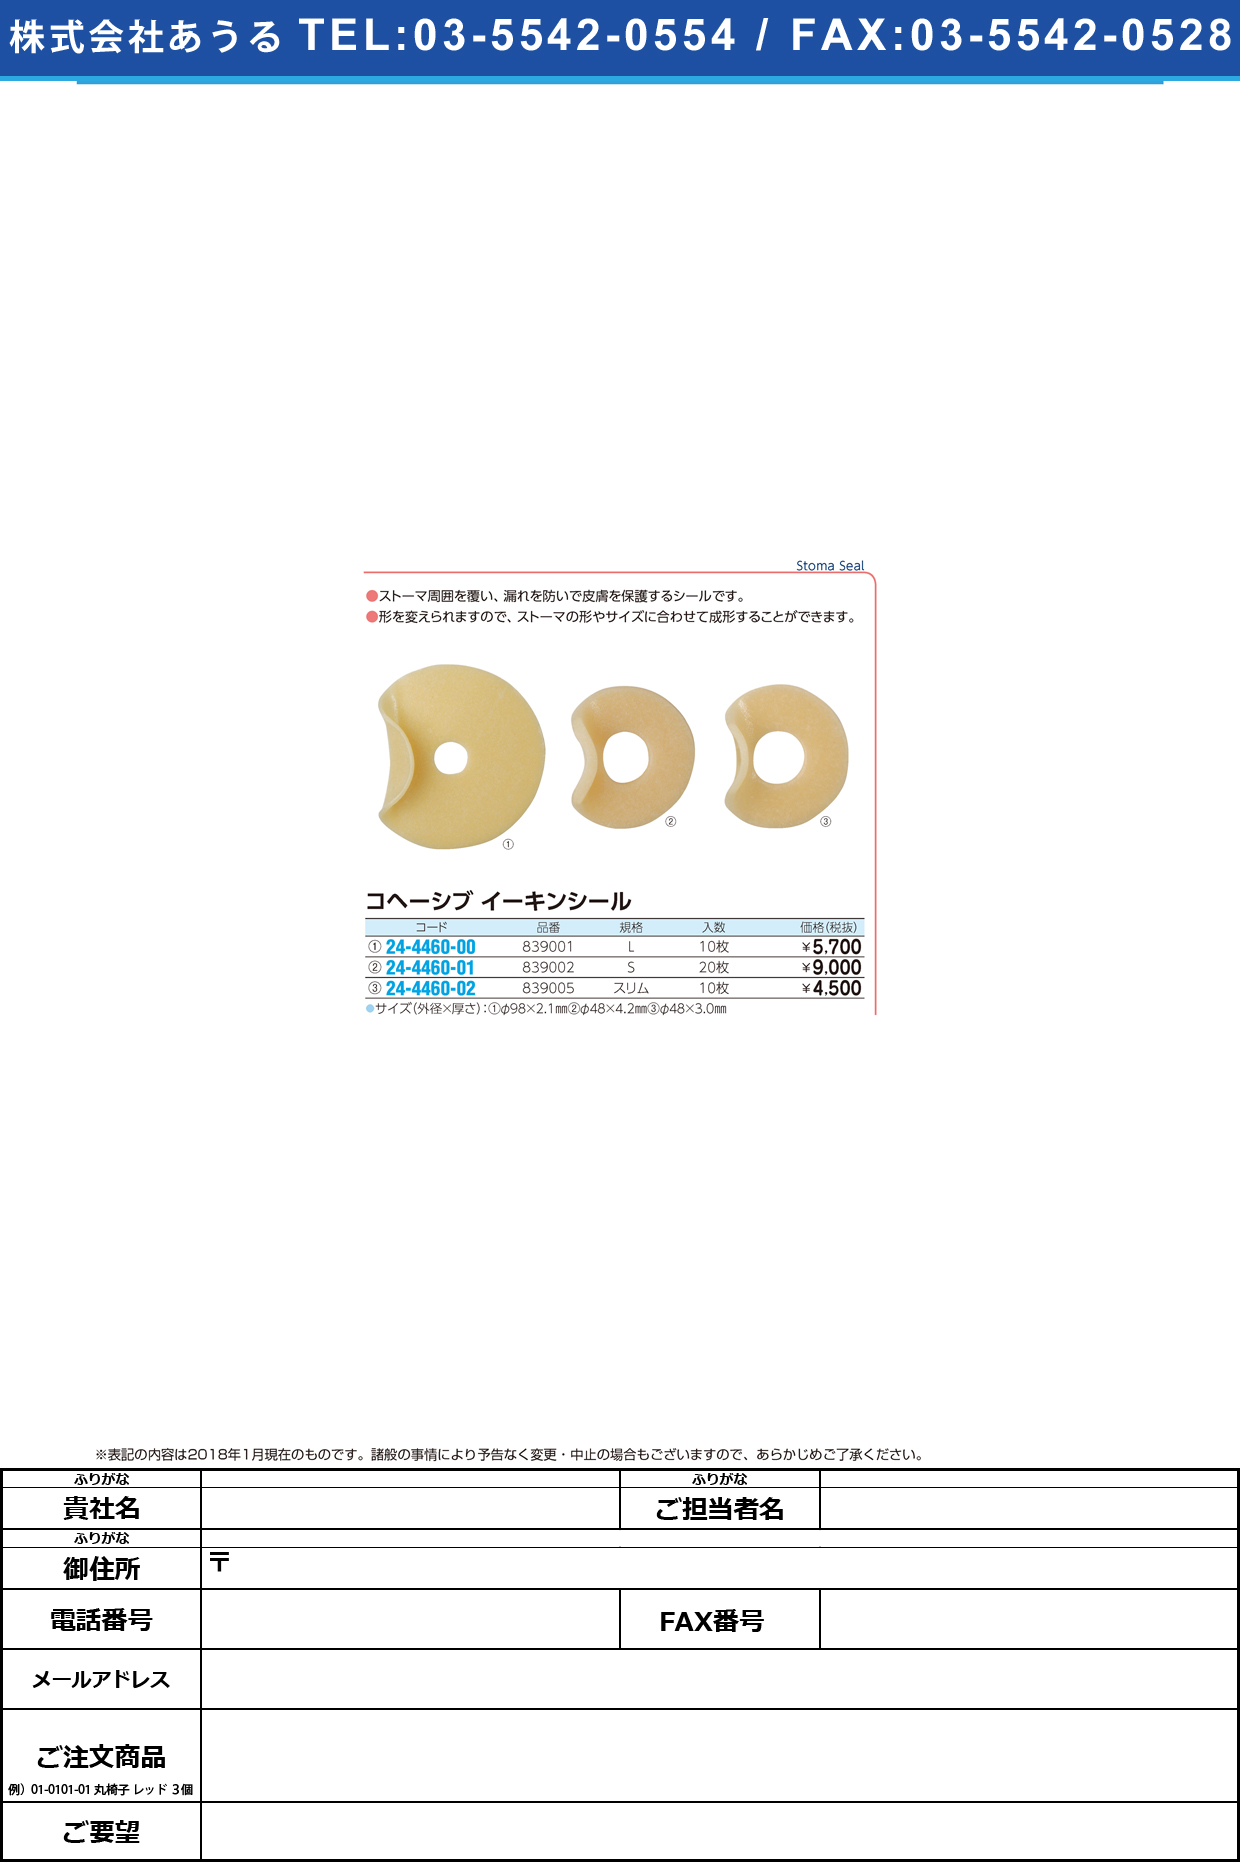 (24-4460-01)イーキンシール（Ｓ） 839002(20ﾏｲｲﾘ) ｲｰｷﾝｼｰﾙ(S)【1箱単位】【2018年カタログ商品】